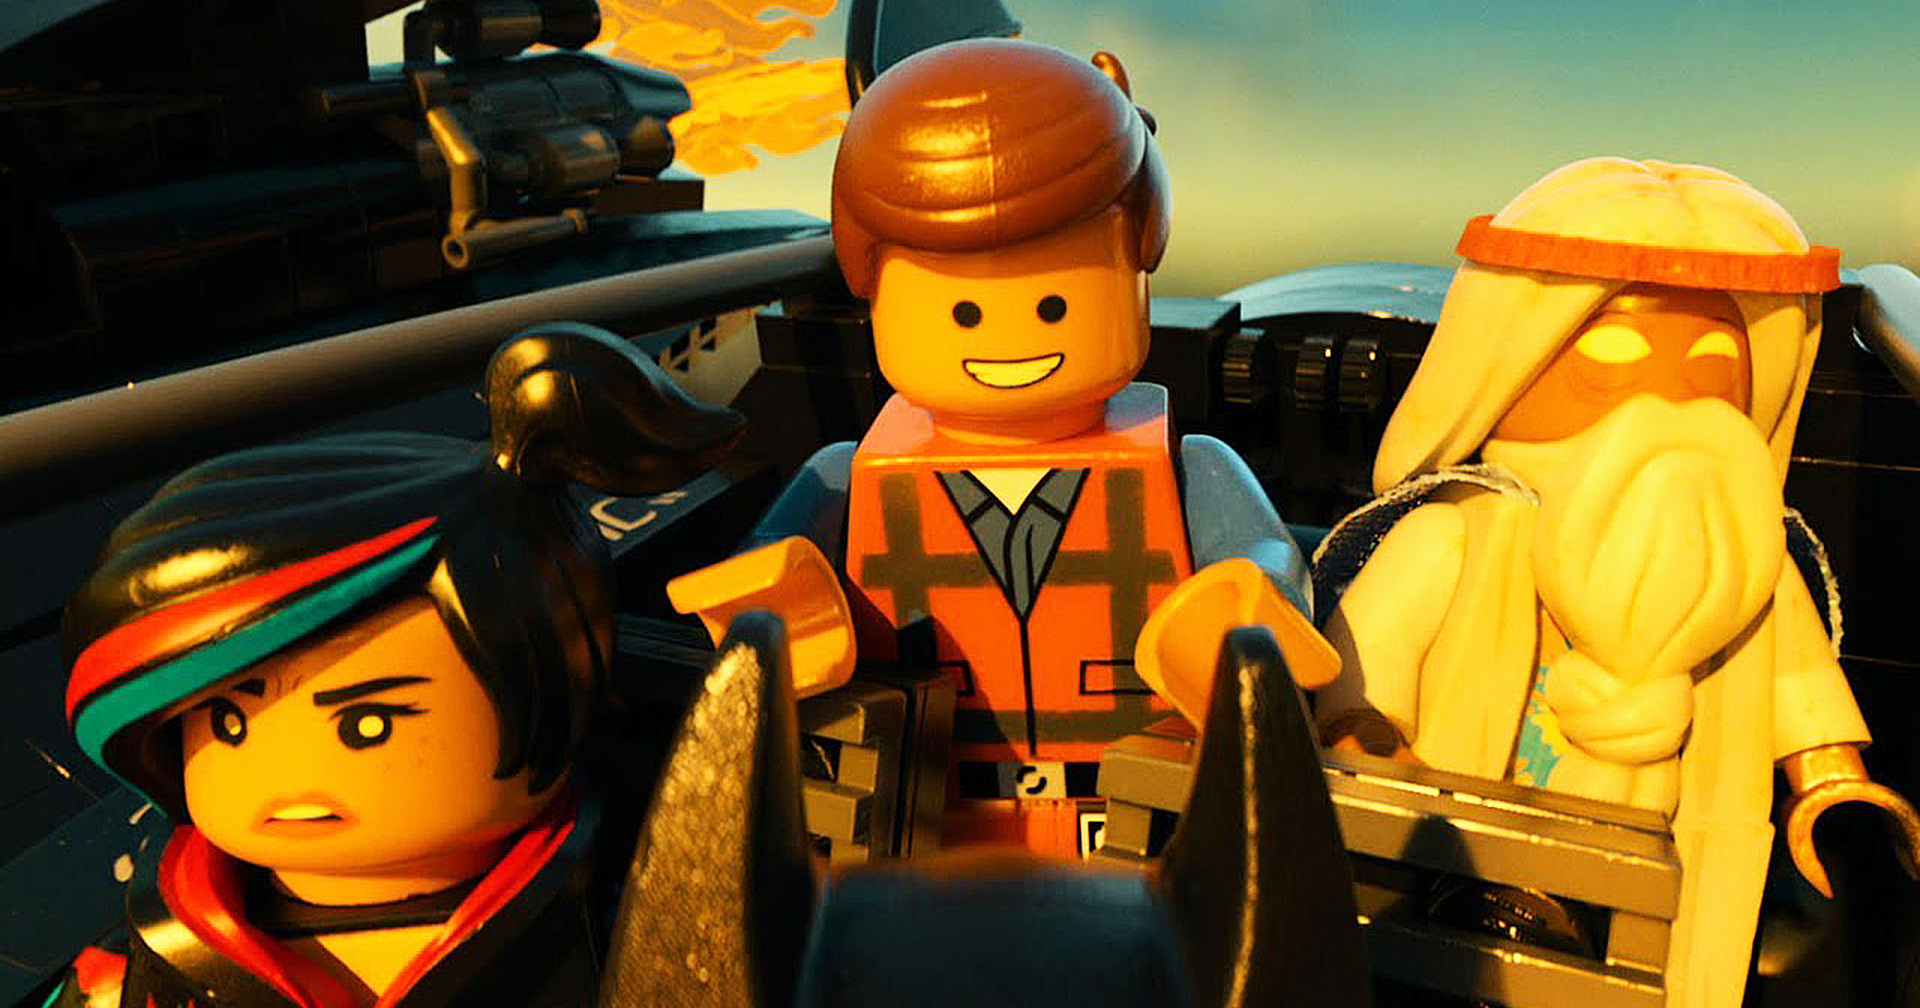 ภาพยนตร์แอนิเมชัน ‘LEGO’ เรื่องใหม่เริ่มเดินหน้า หลัง Universal ซื้อสิทธิมาจาก Warner Bros.